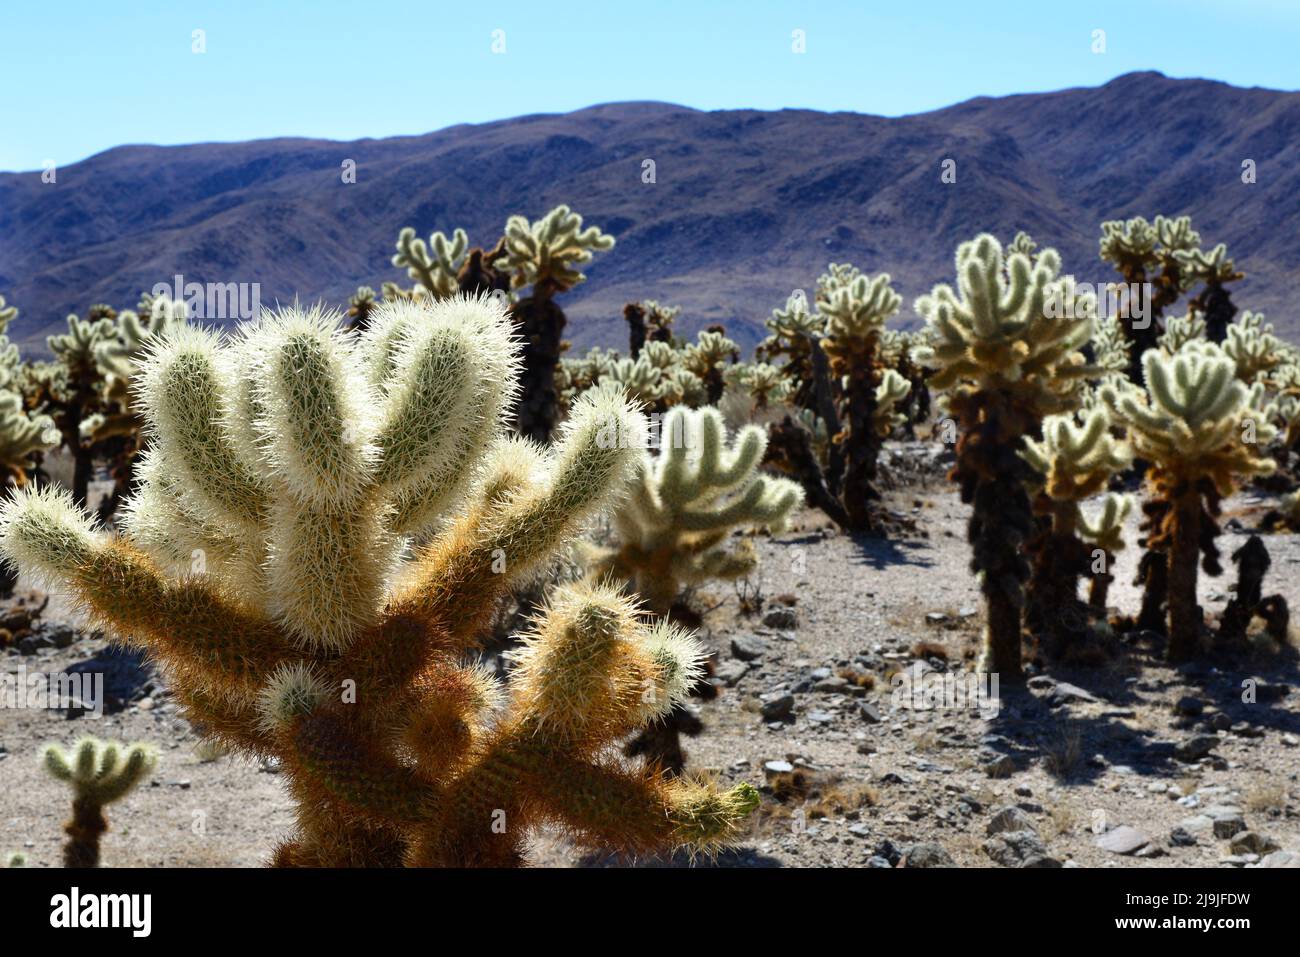 El exclusivo jardín de cactus Cholla en el Parque Nacional Joshua Tree en el desierto de Mojave, CA Foto de stock